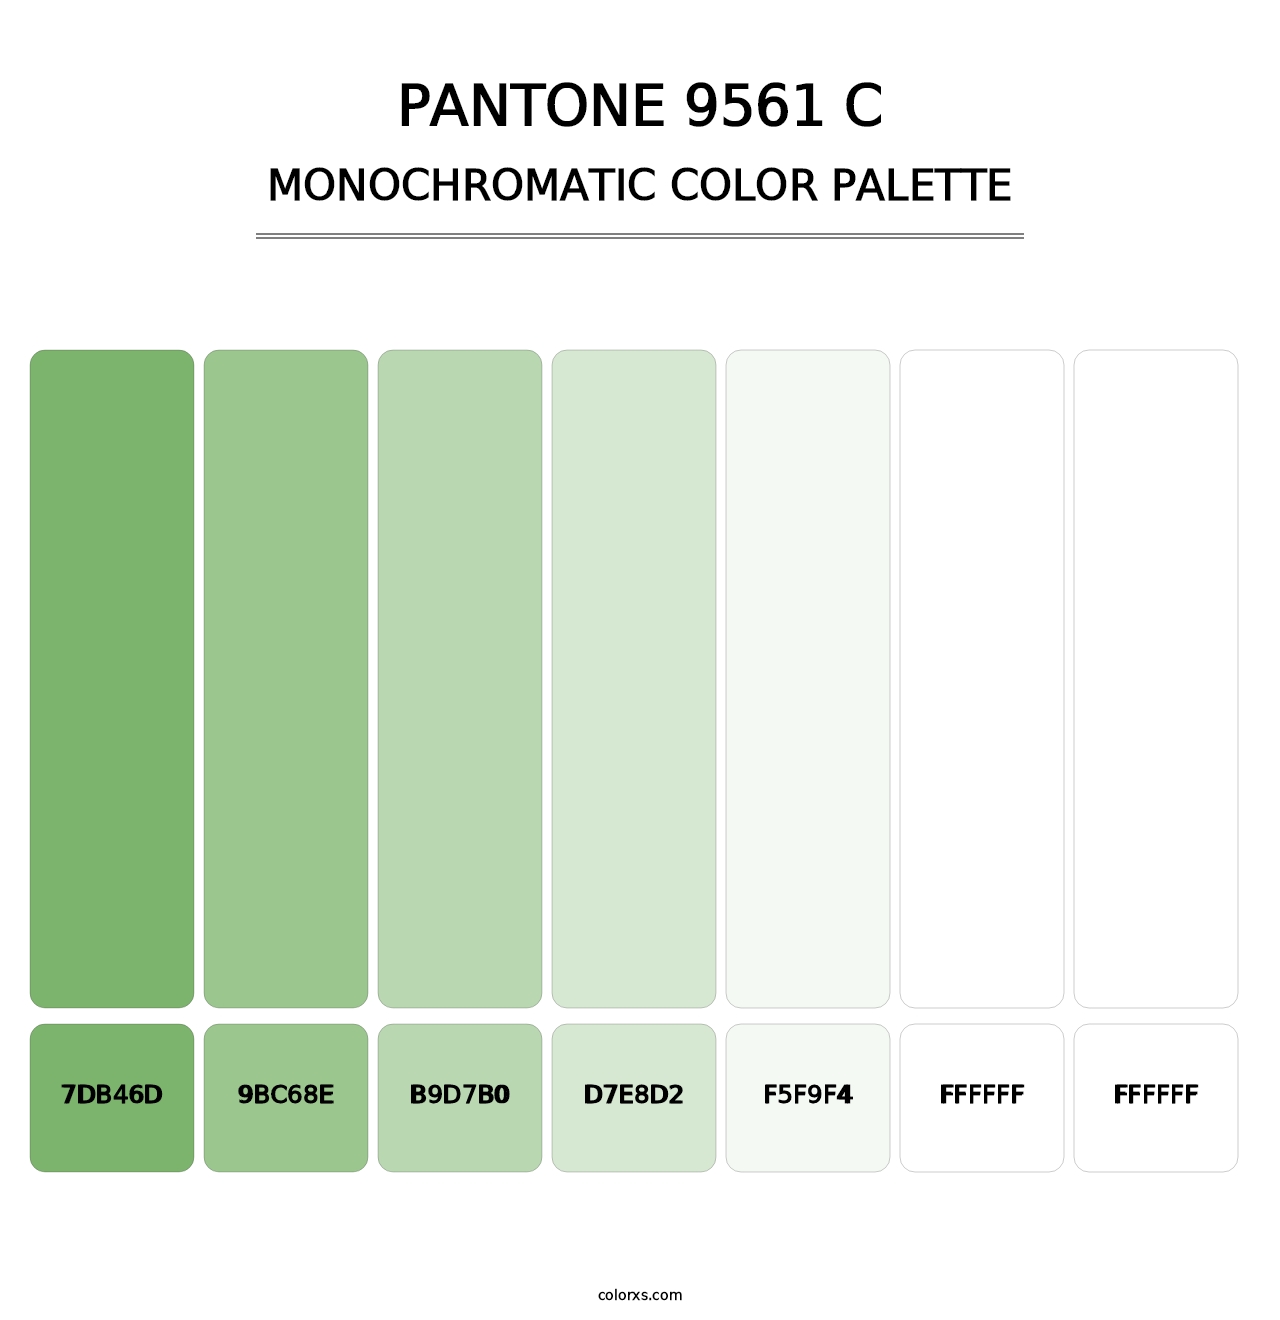 PANTONE 9561 C - Monochromatic Color Palette